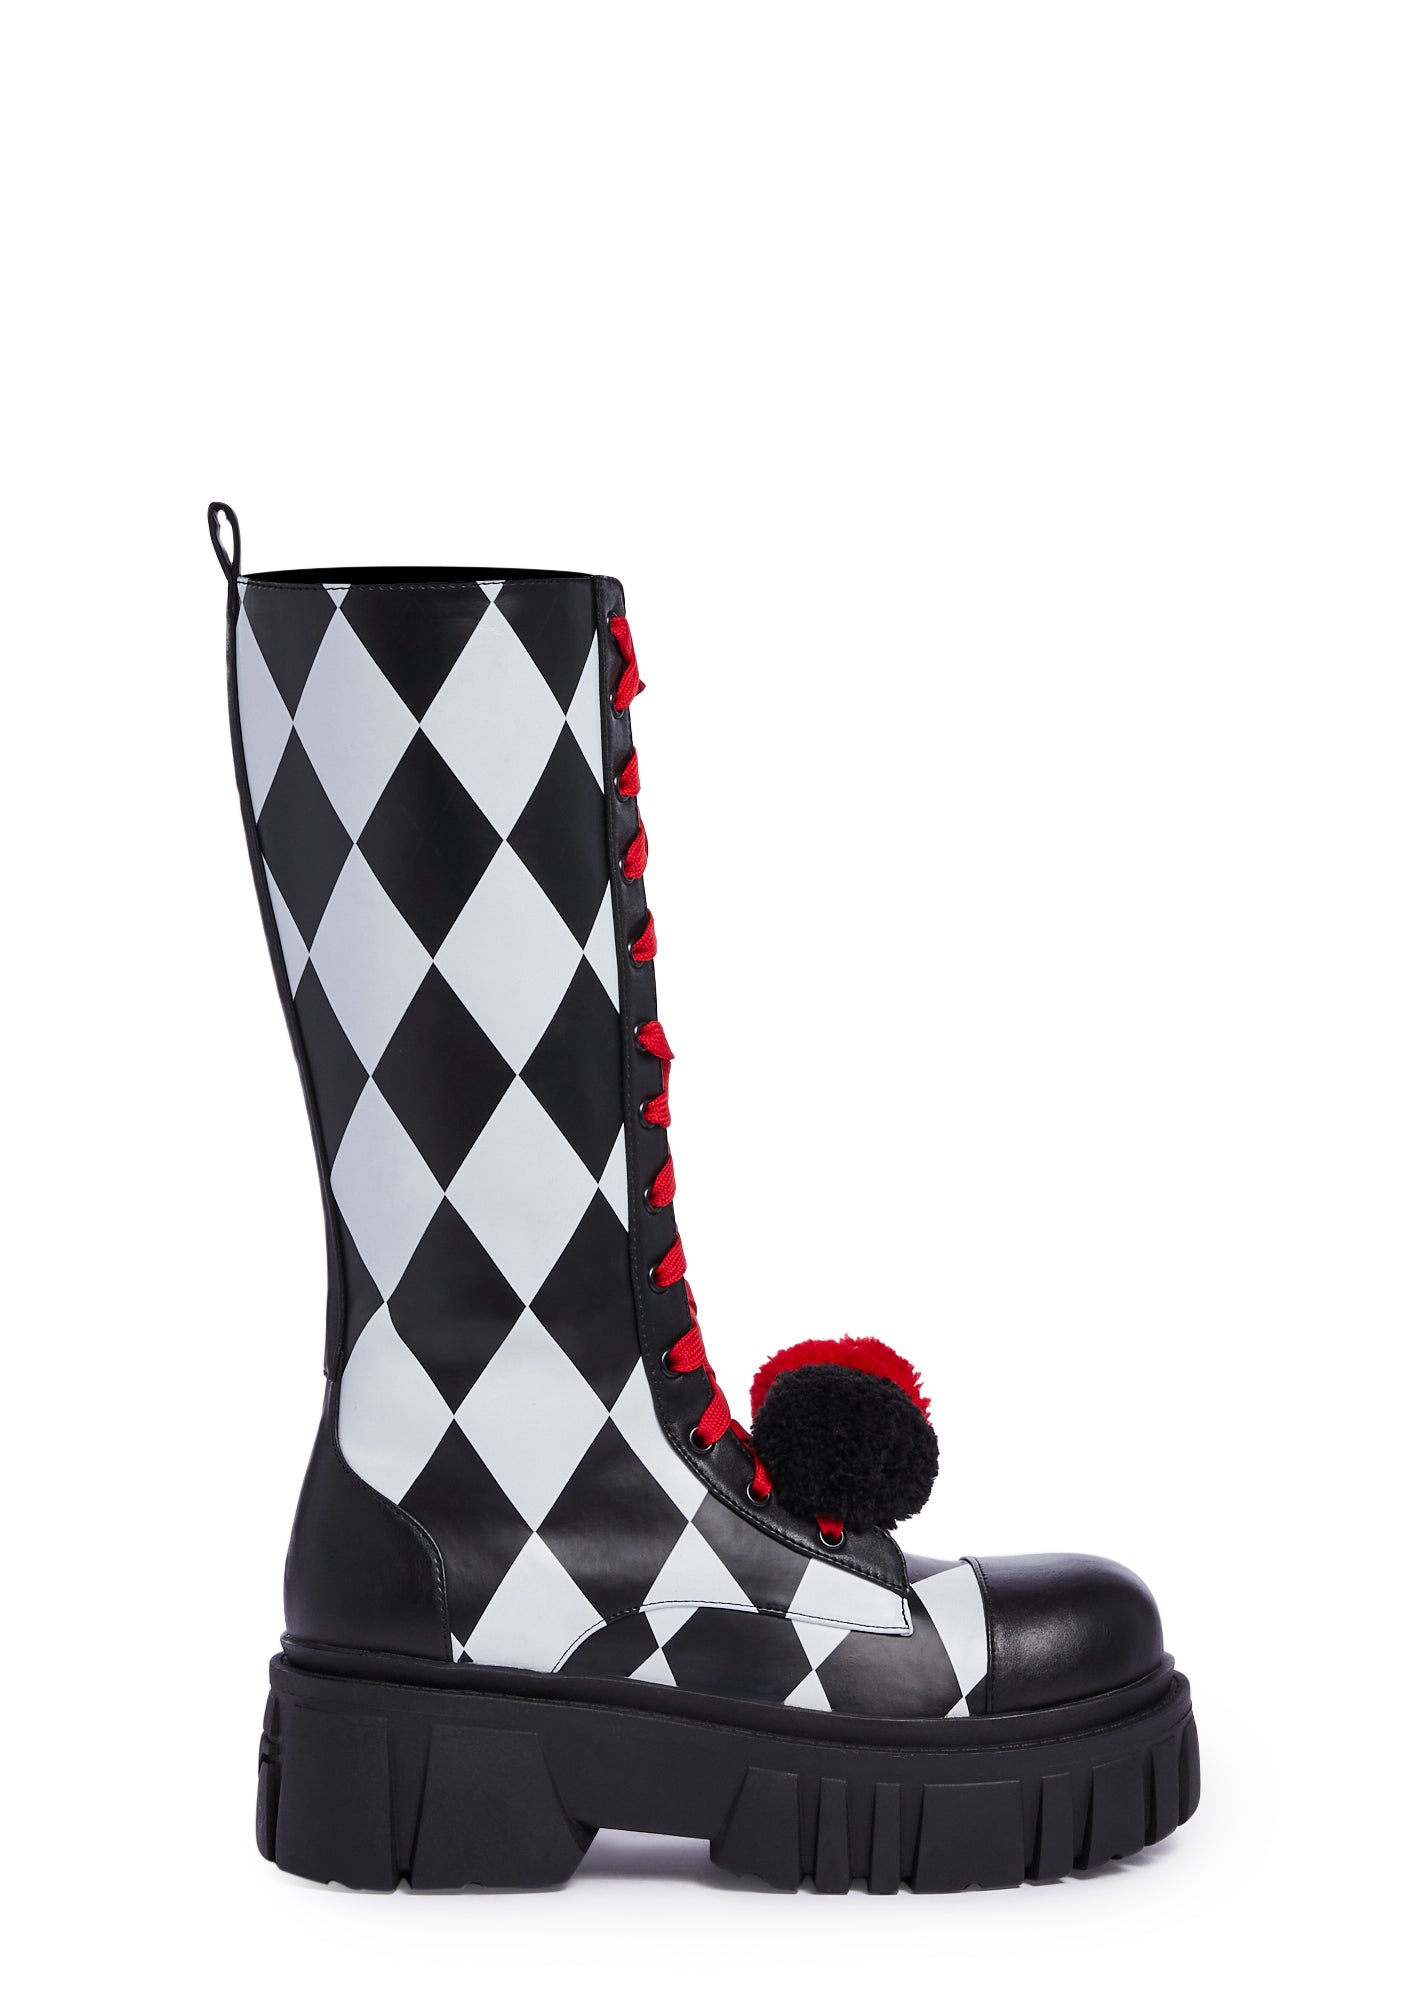 Trickz N Treatz Clown Boots - Black/White/Red